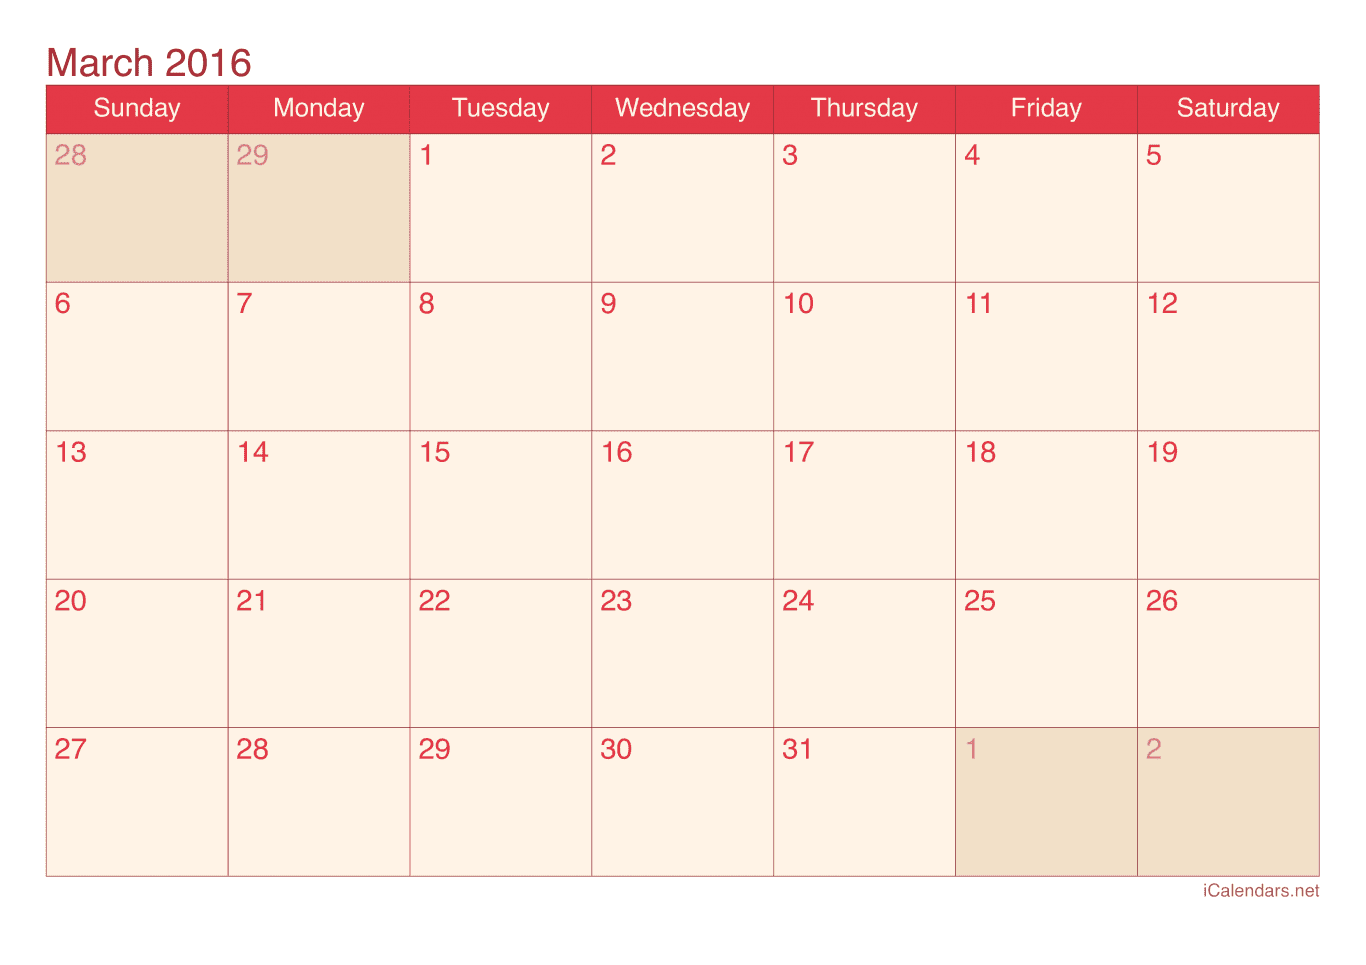 2016 March Calendar - Cherry